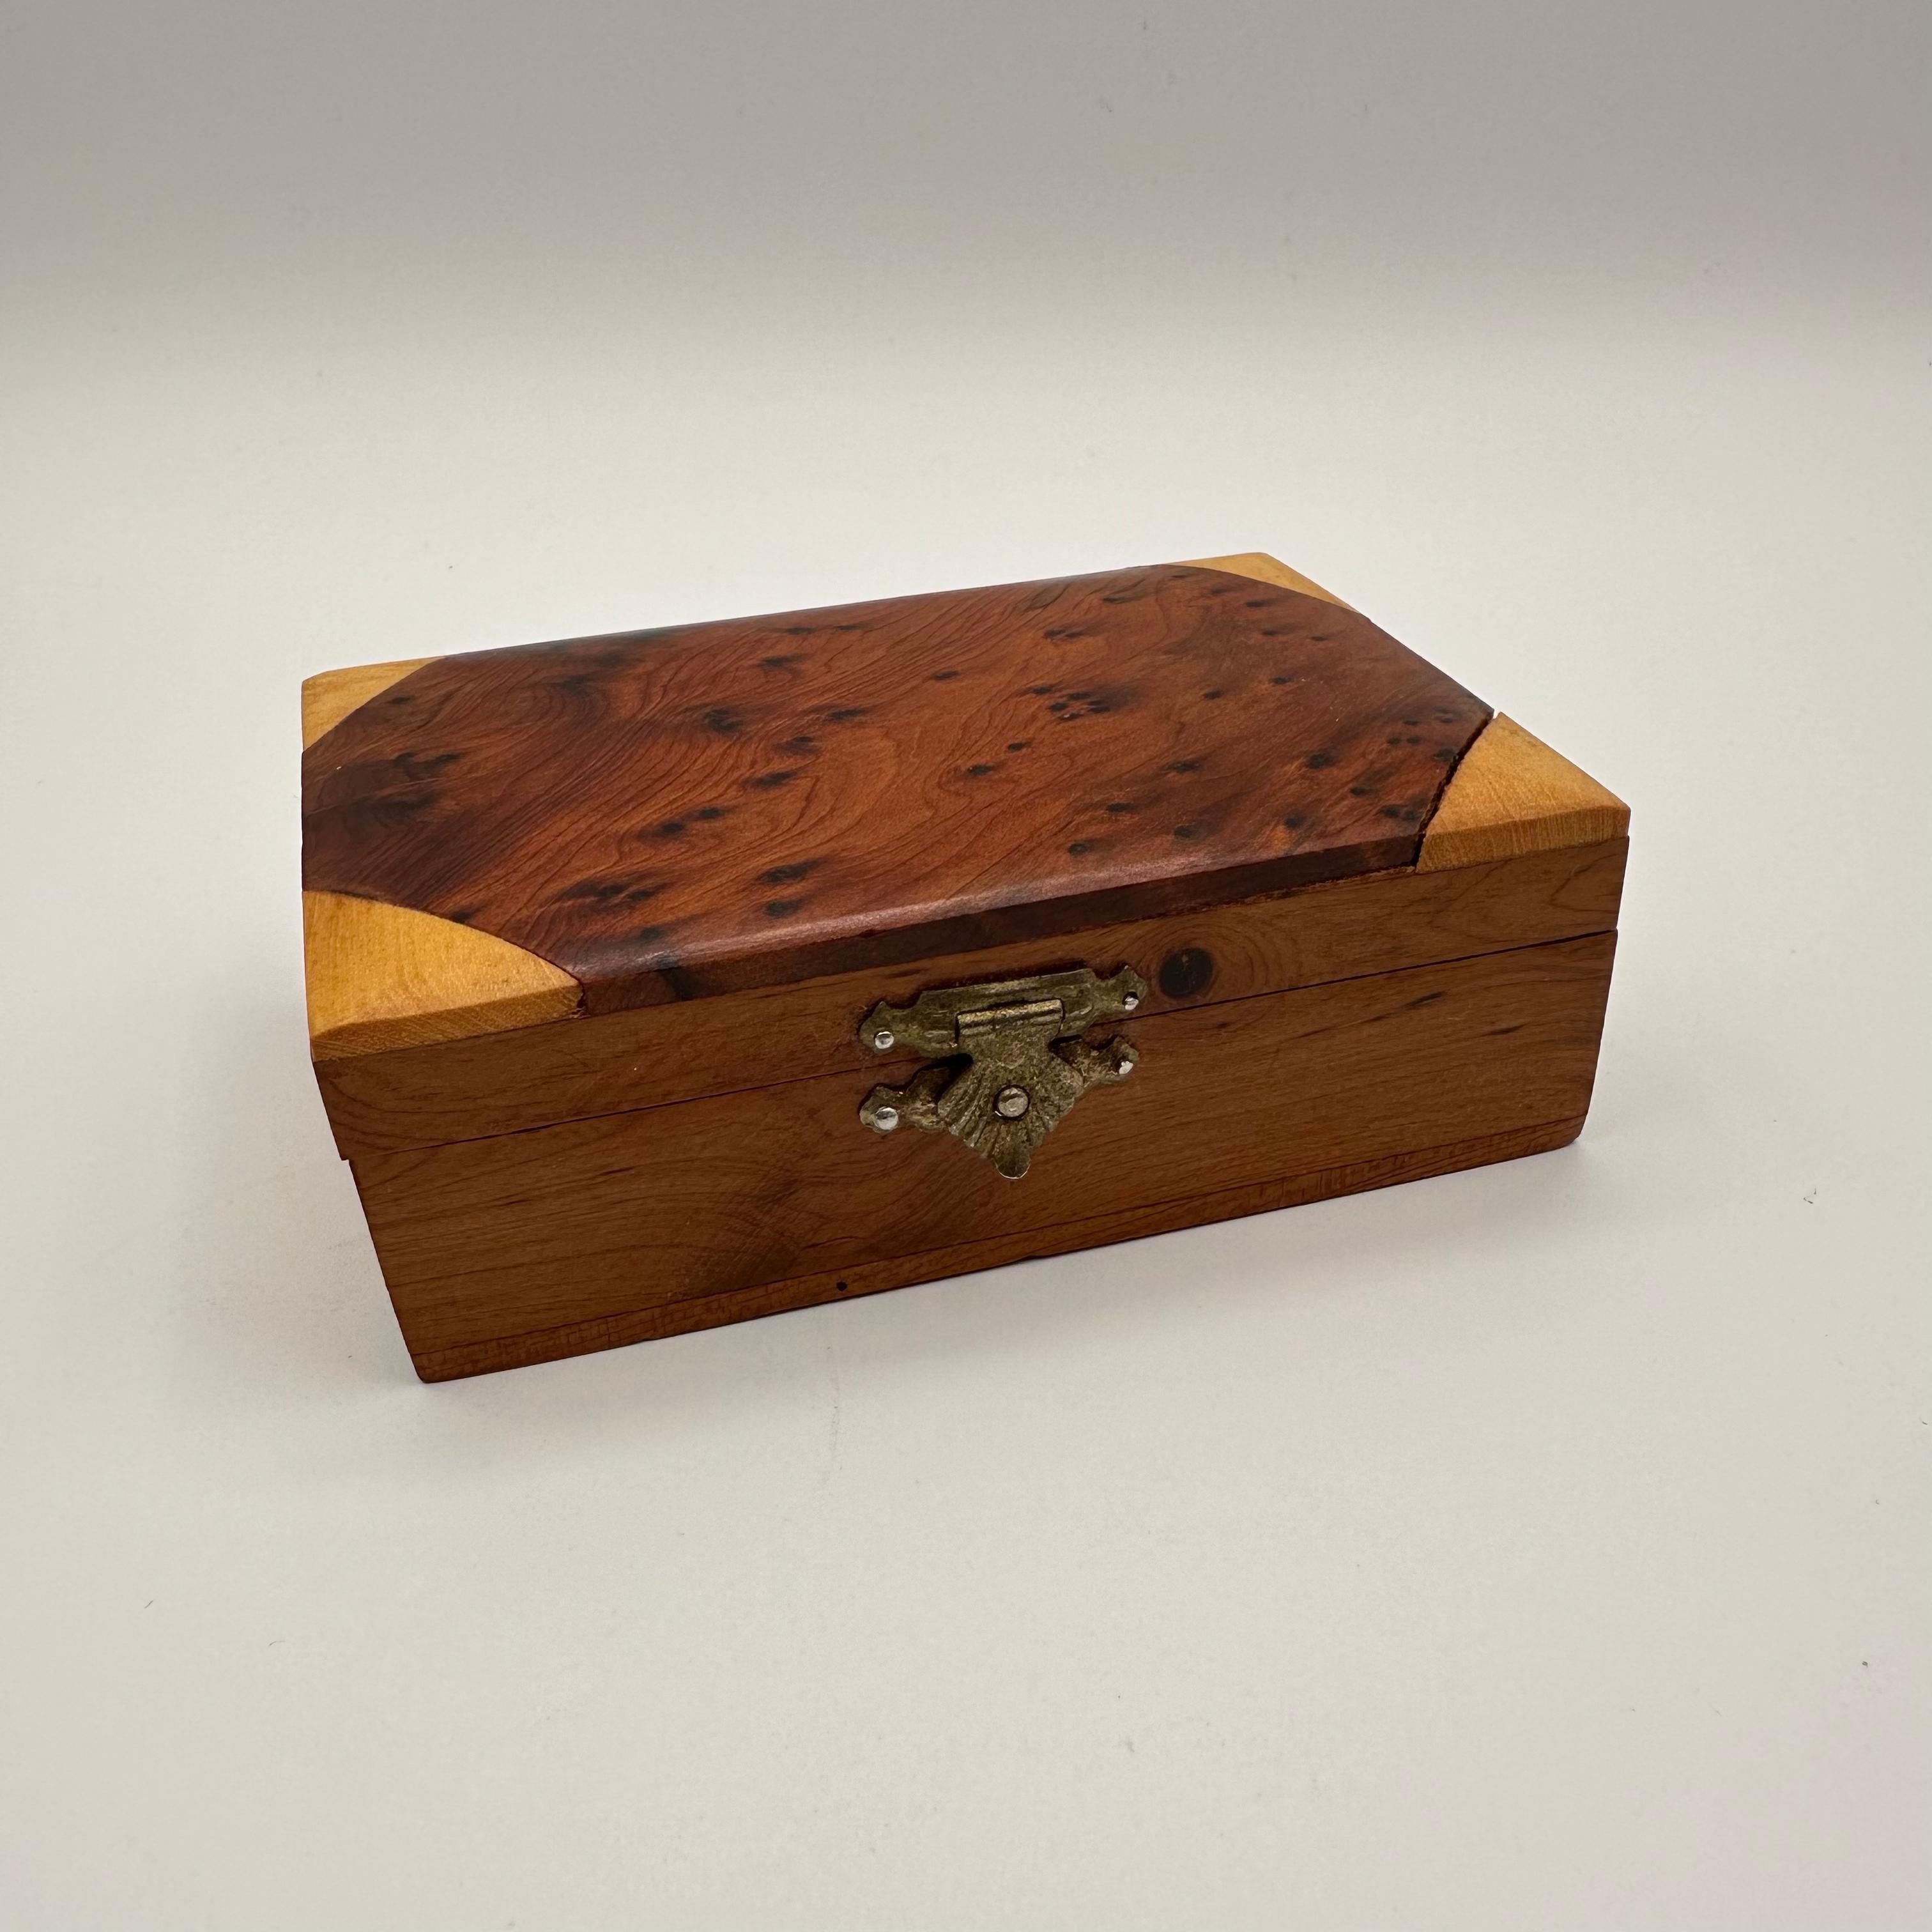 Eine kleine rechteckige Kiste mit Deckel aus mehreren Holzarten. Hauptsächlich in einem dunkleren Holz mit kleinen Noppen, mit eingelegten dreieckigen Ecken in einem helleren Holzton. Der Deckel ist aufklappbar und wird mit einem kleinen